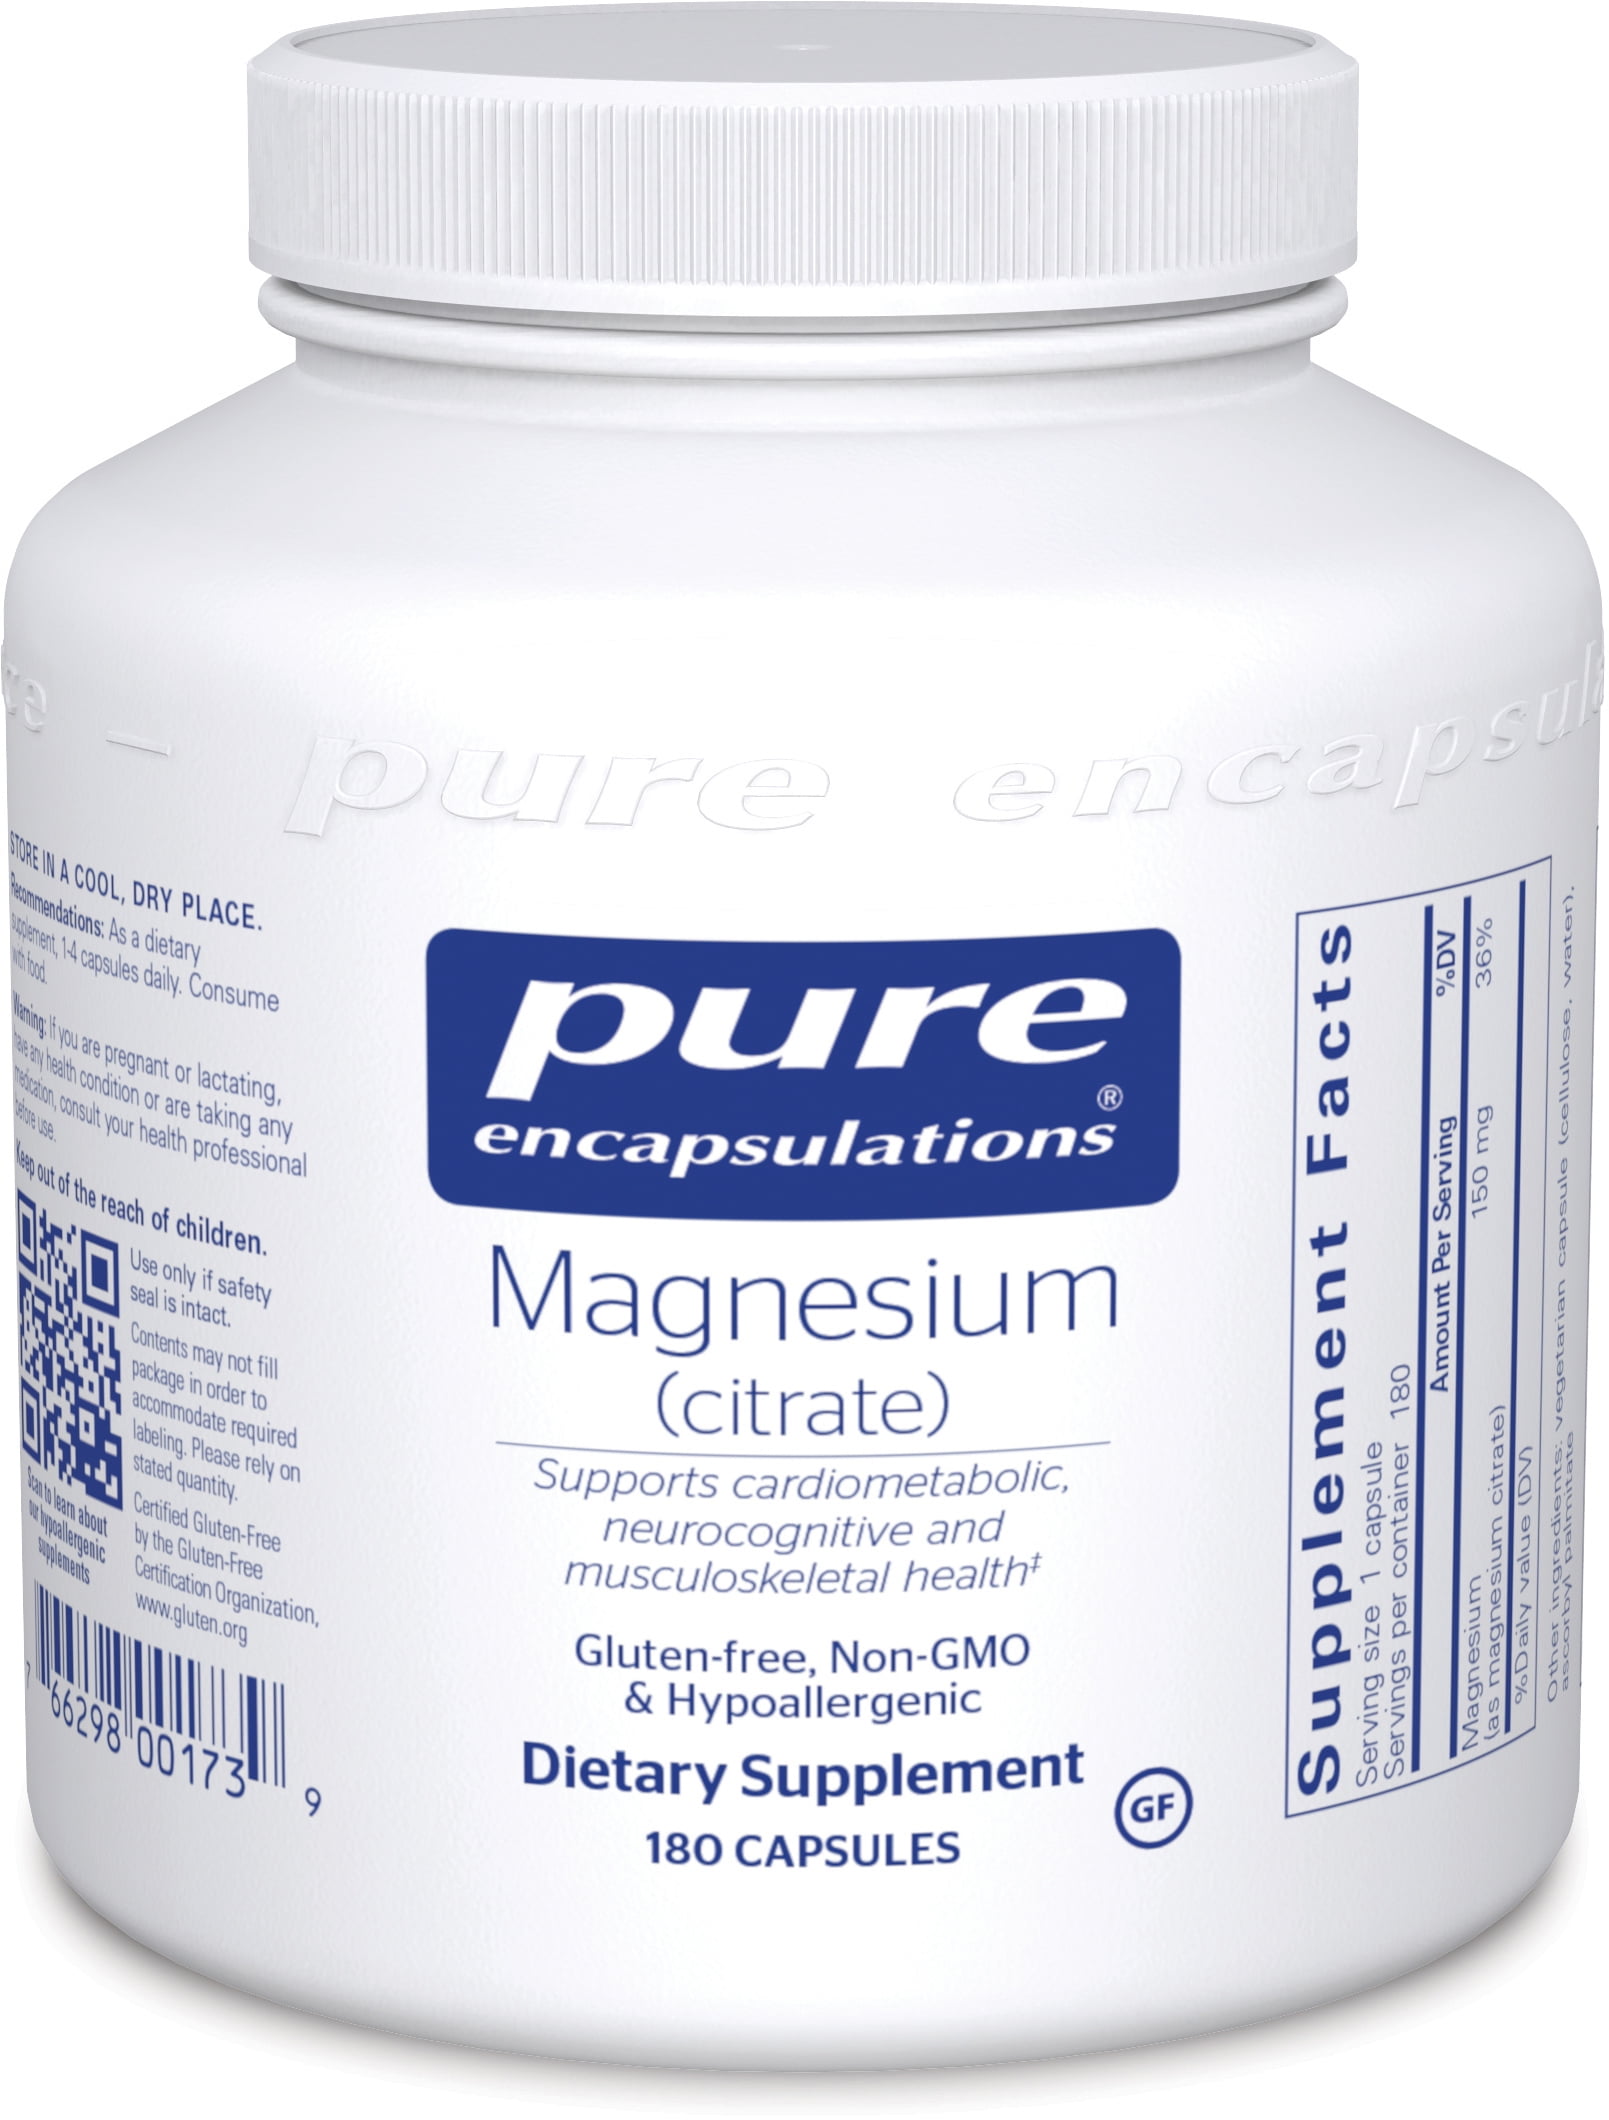 magnesium citrate constipation liquid